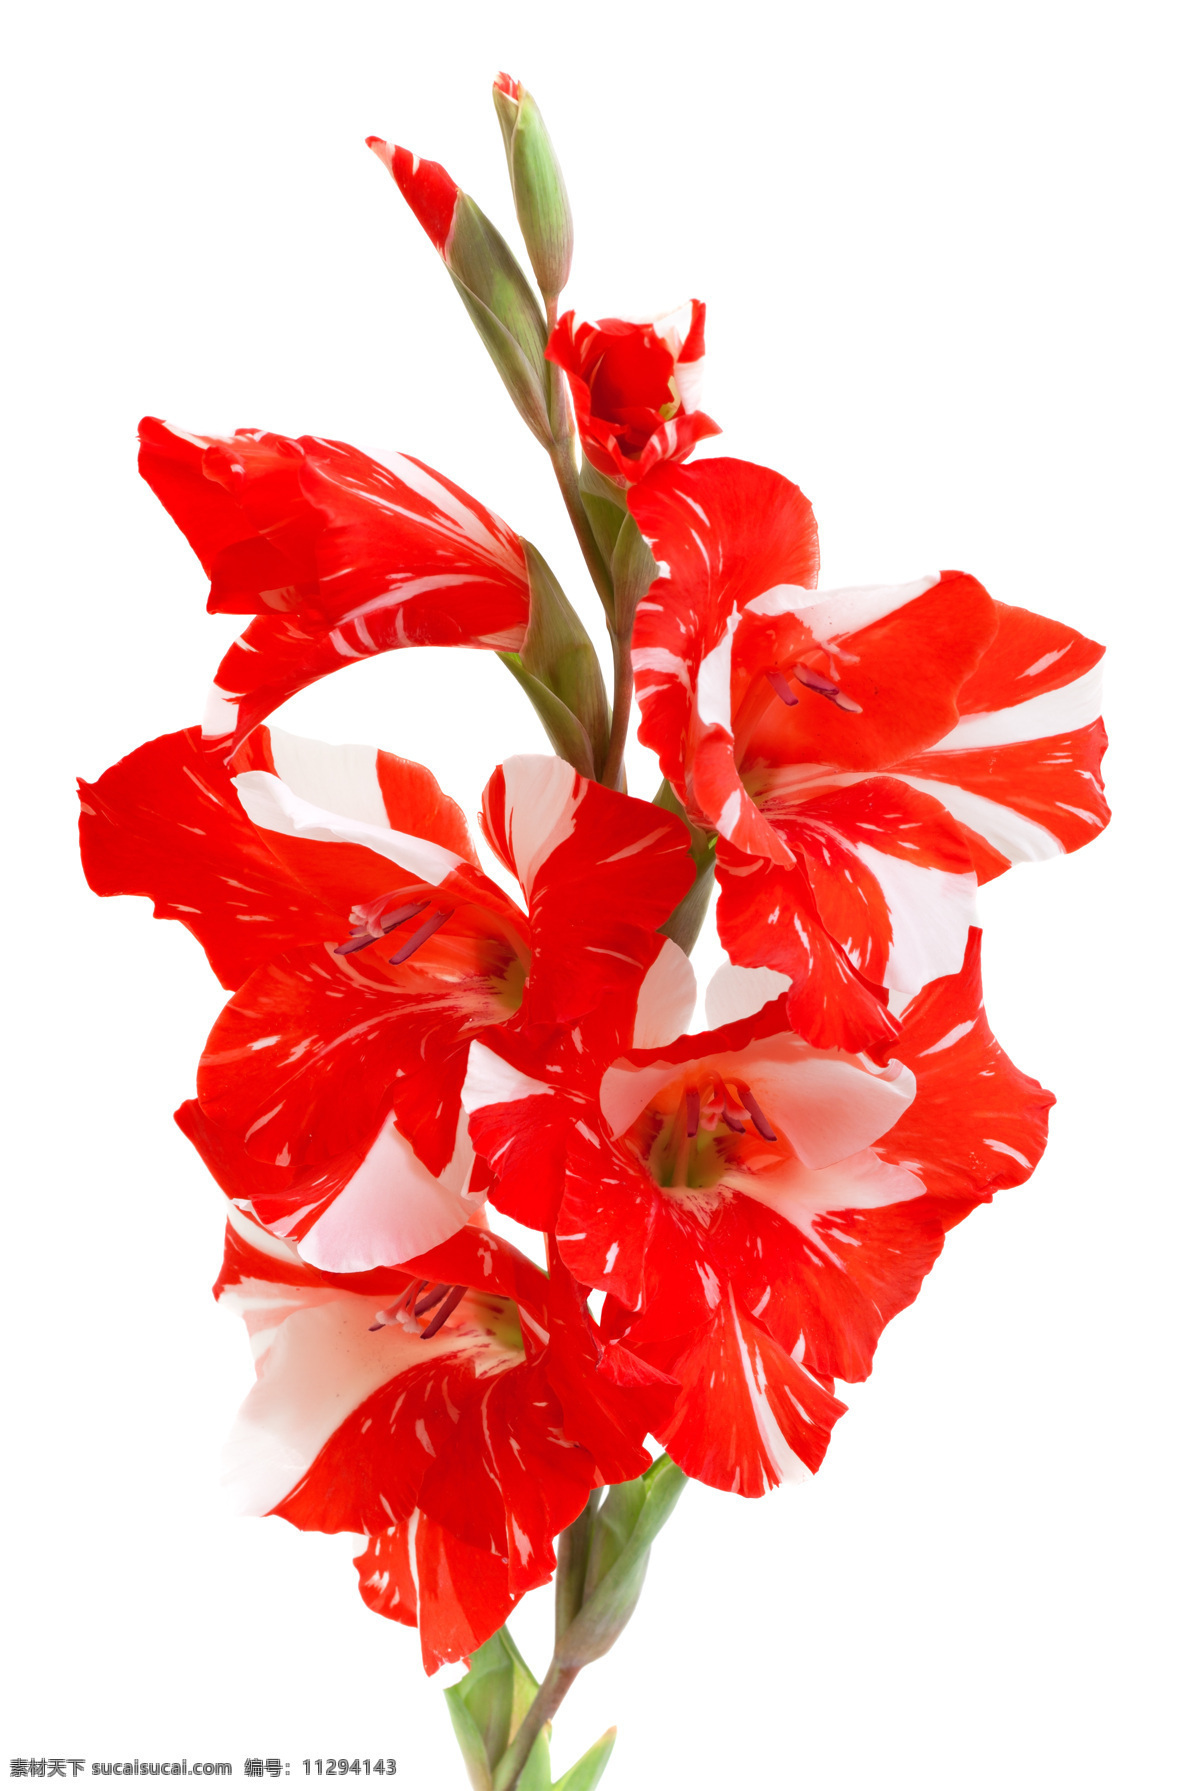 美人蕉 花 花朵 红色 红白相间 花束 花卉 边框 背景 底纹 花草 生物世界